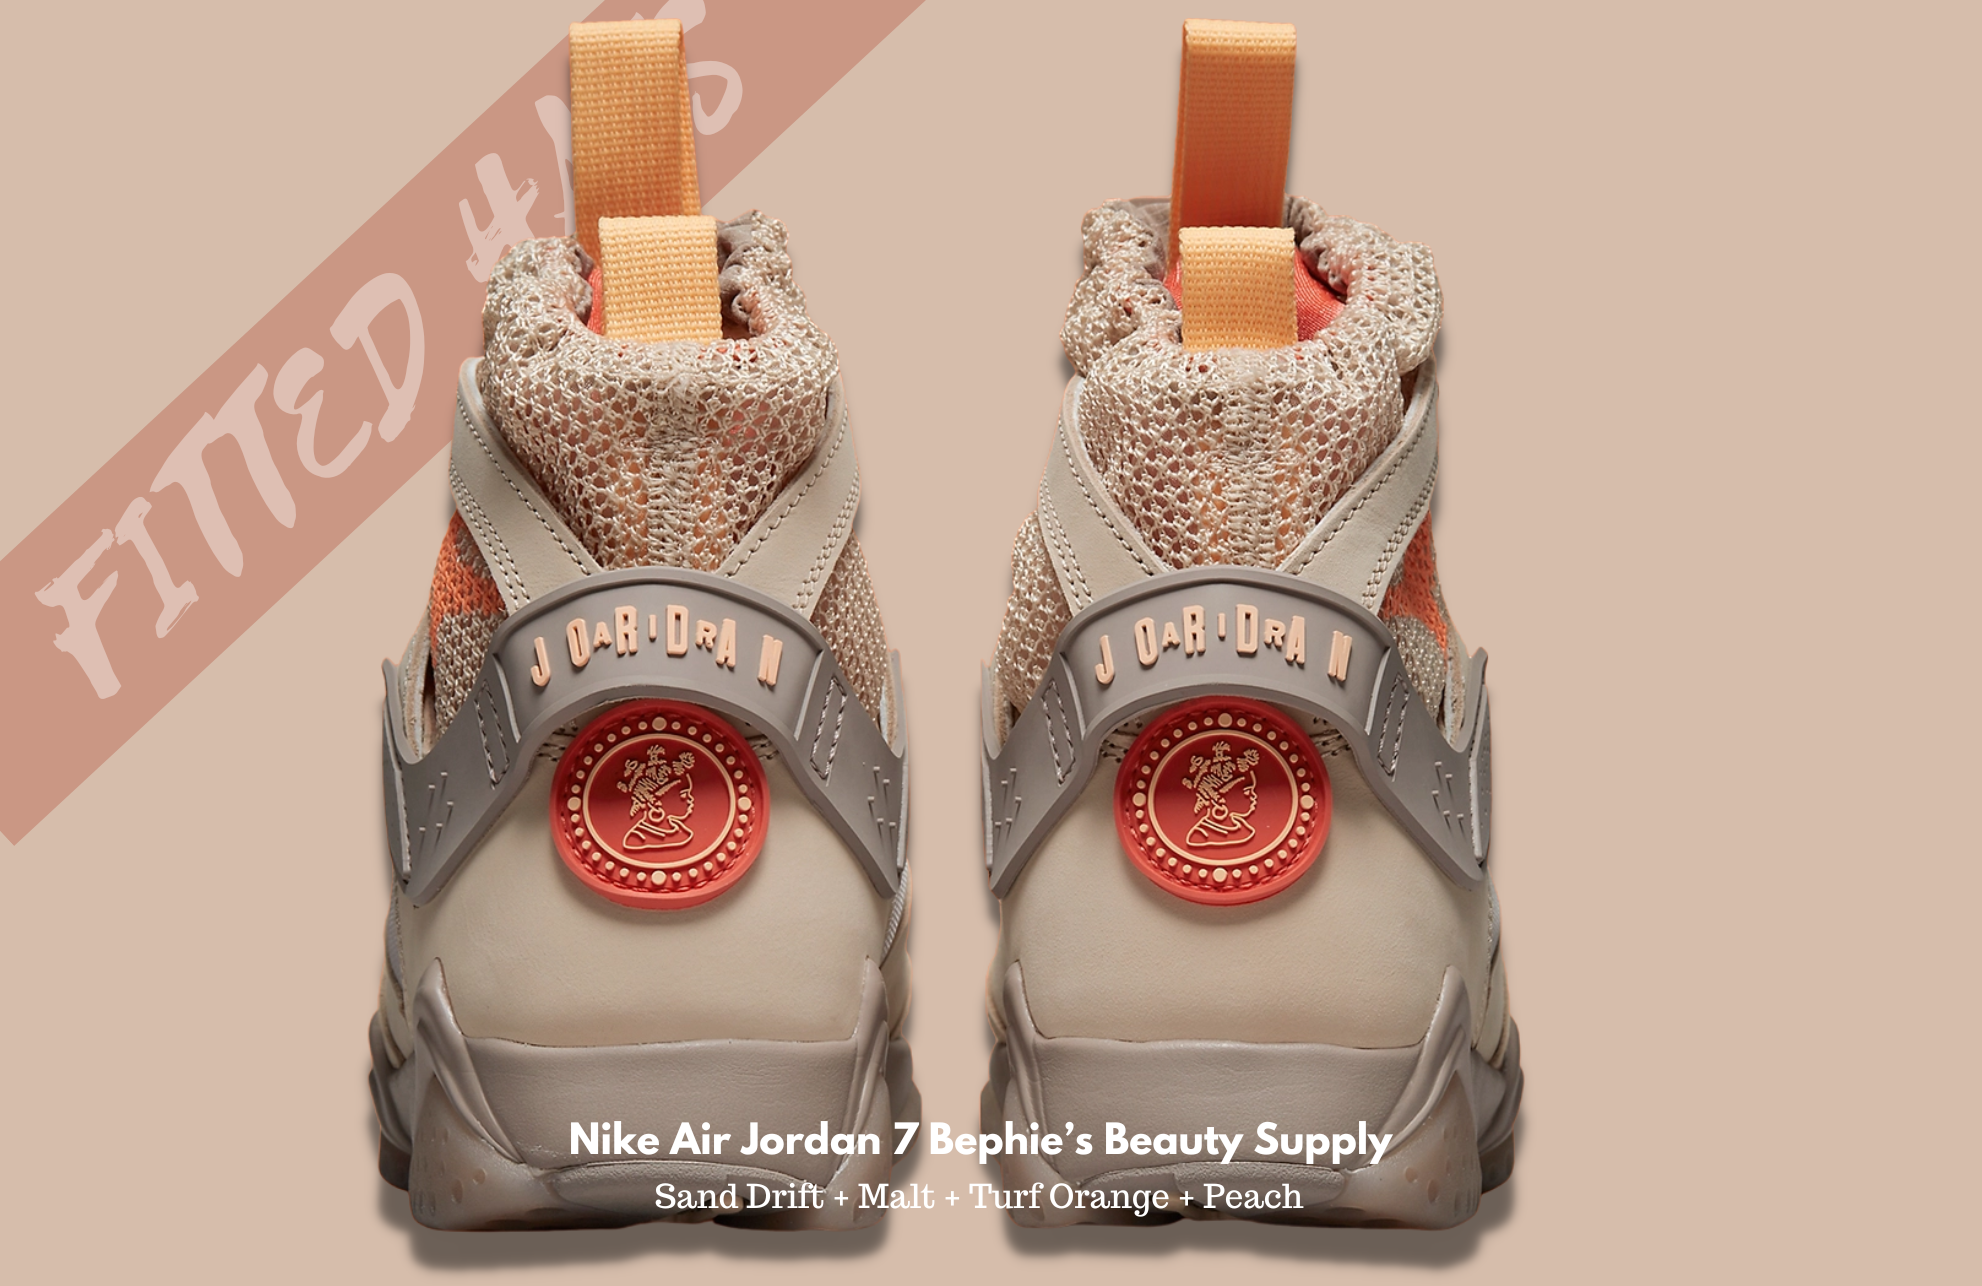 Nike Air Jordan 7 Bephie’s Beauty Supply